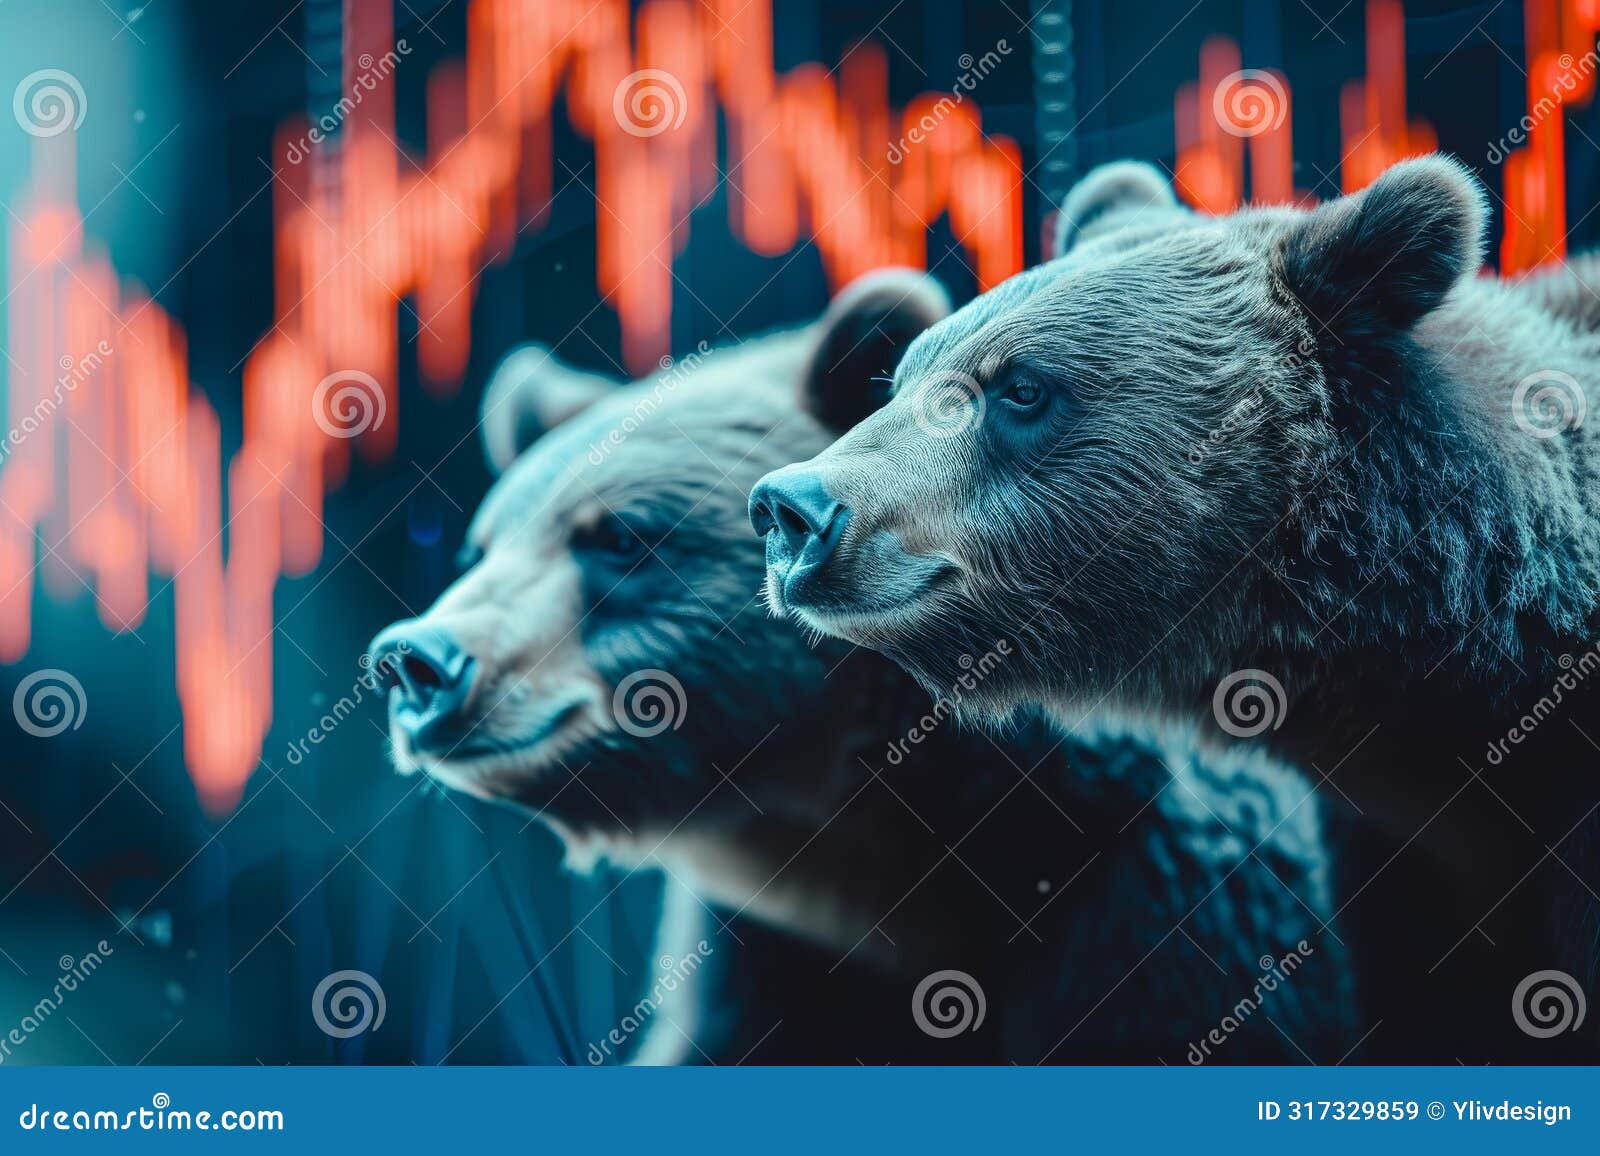 bearish bears stock market graph. generate ai